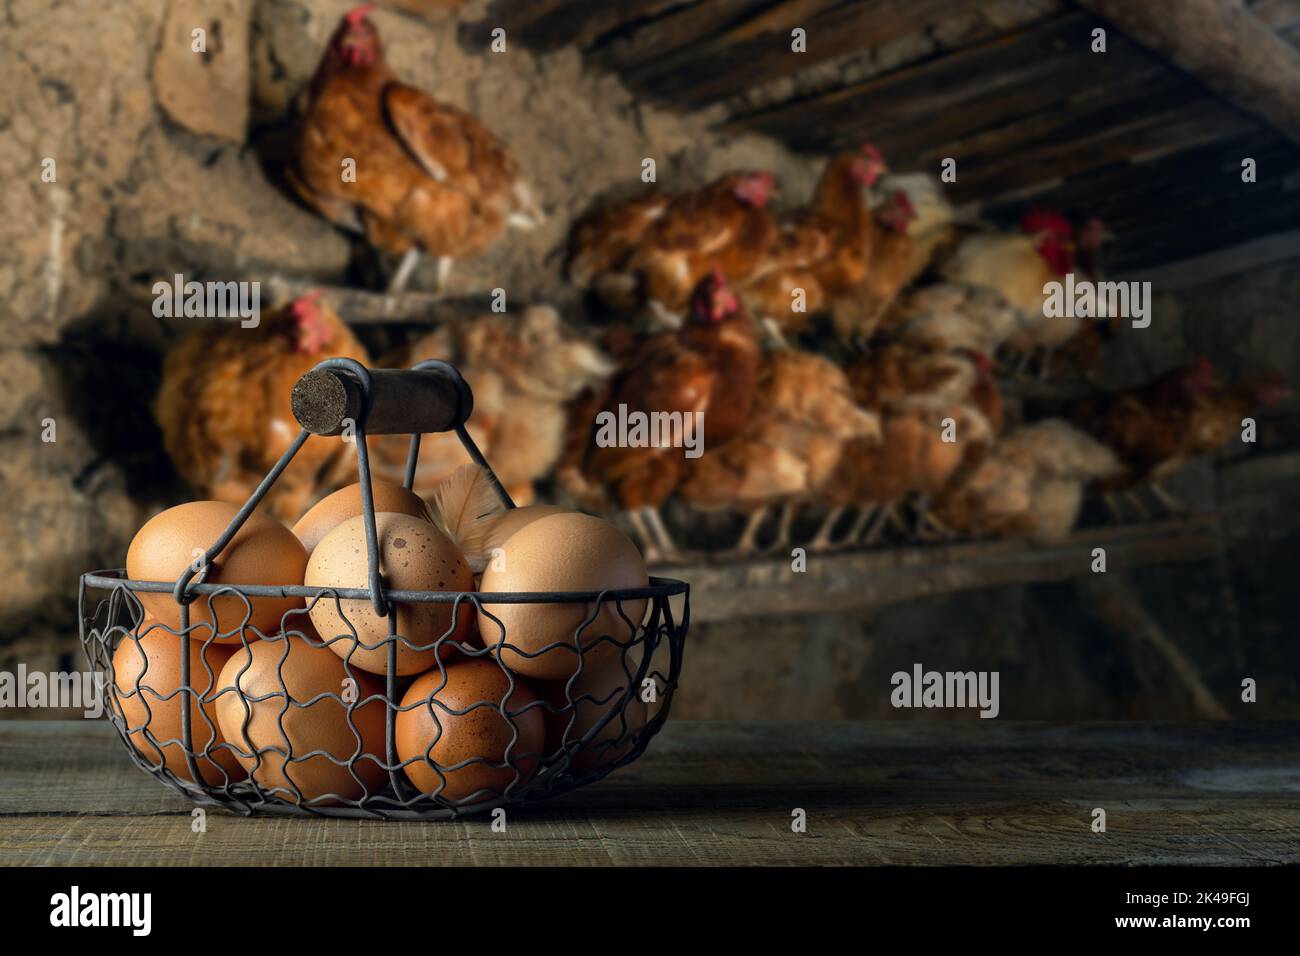 uova di pollo in cestello di metallo sul tavolo con galline sul roost Foto Stock